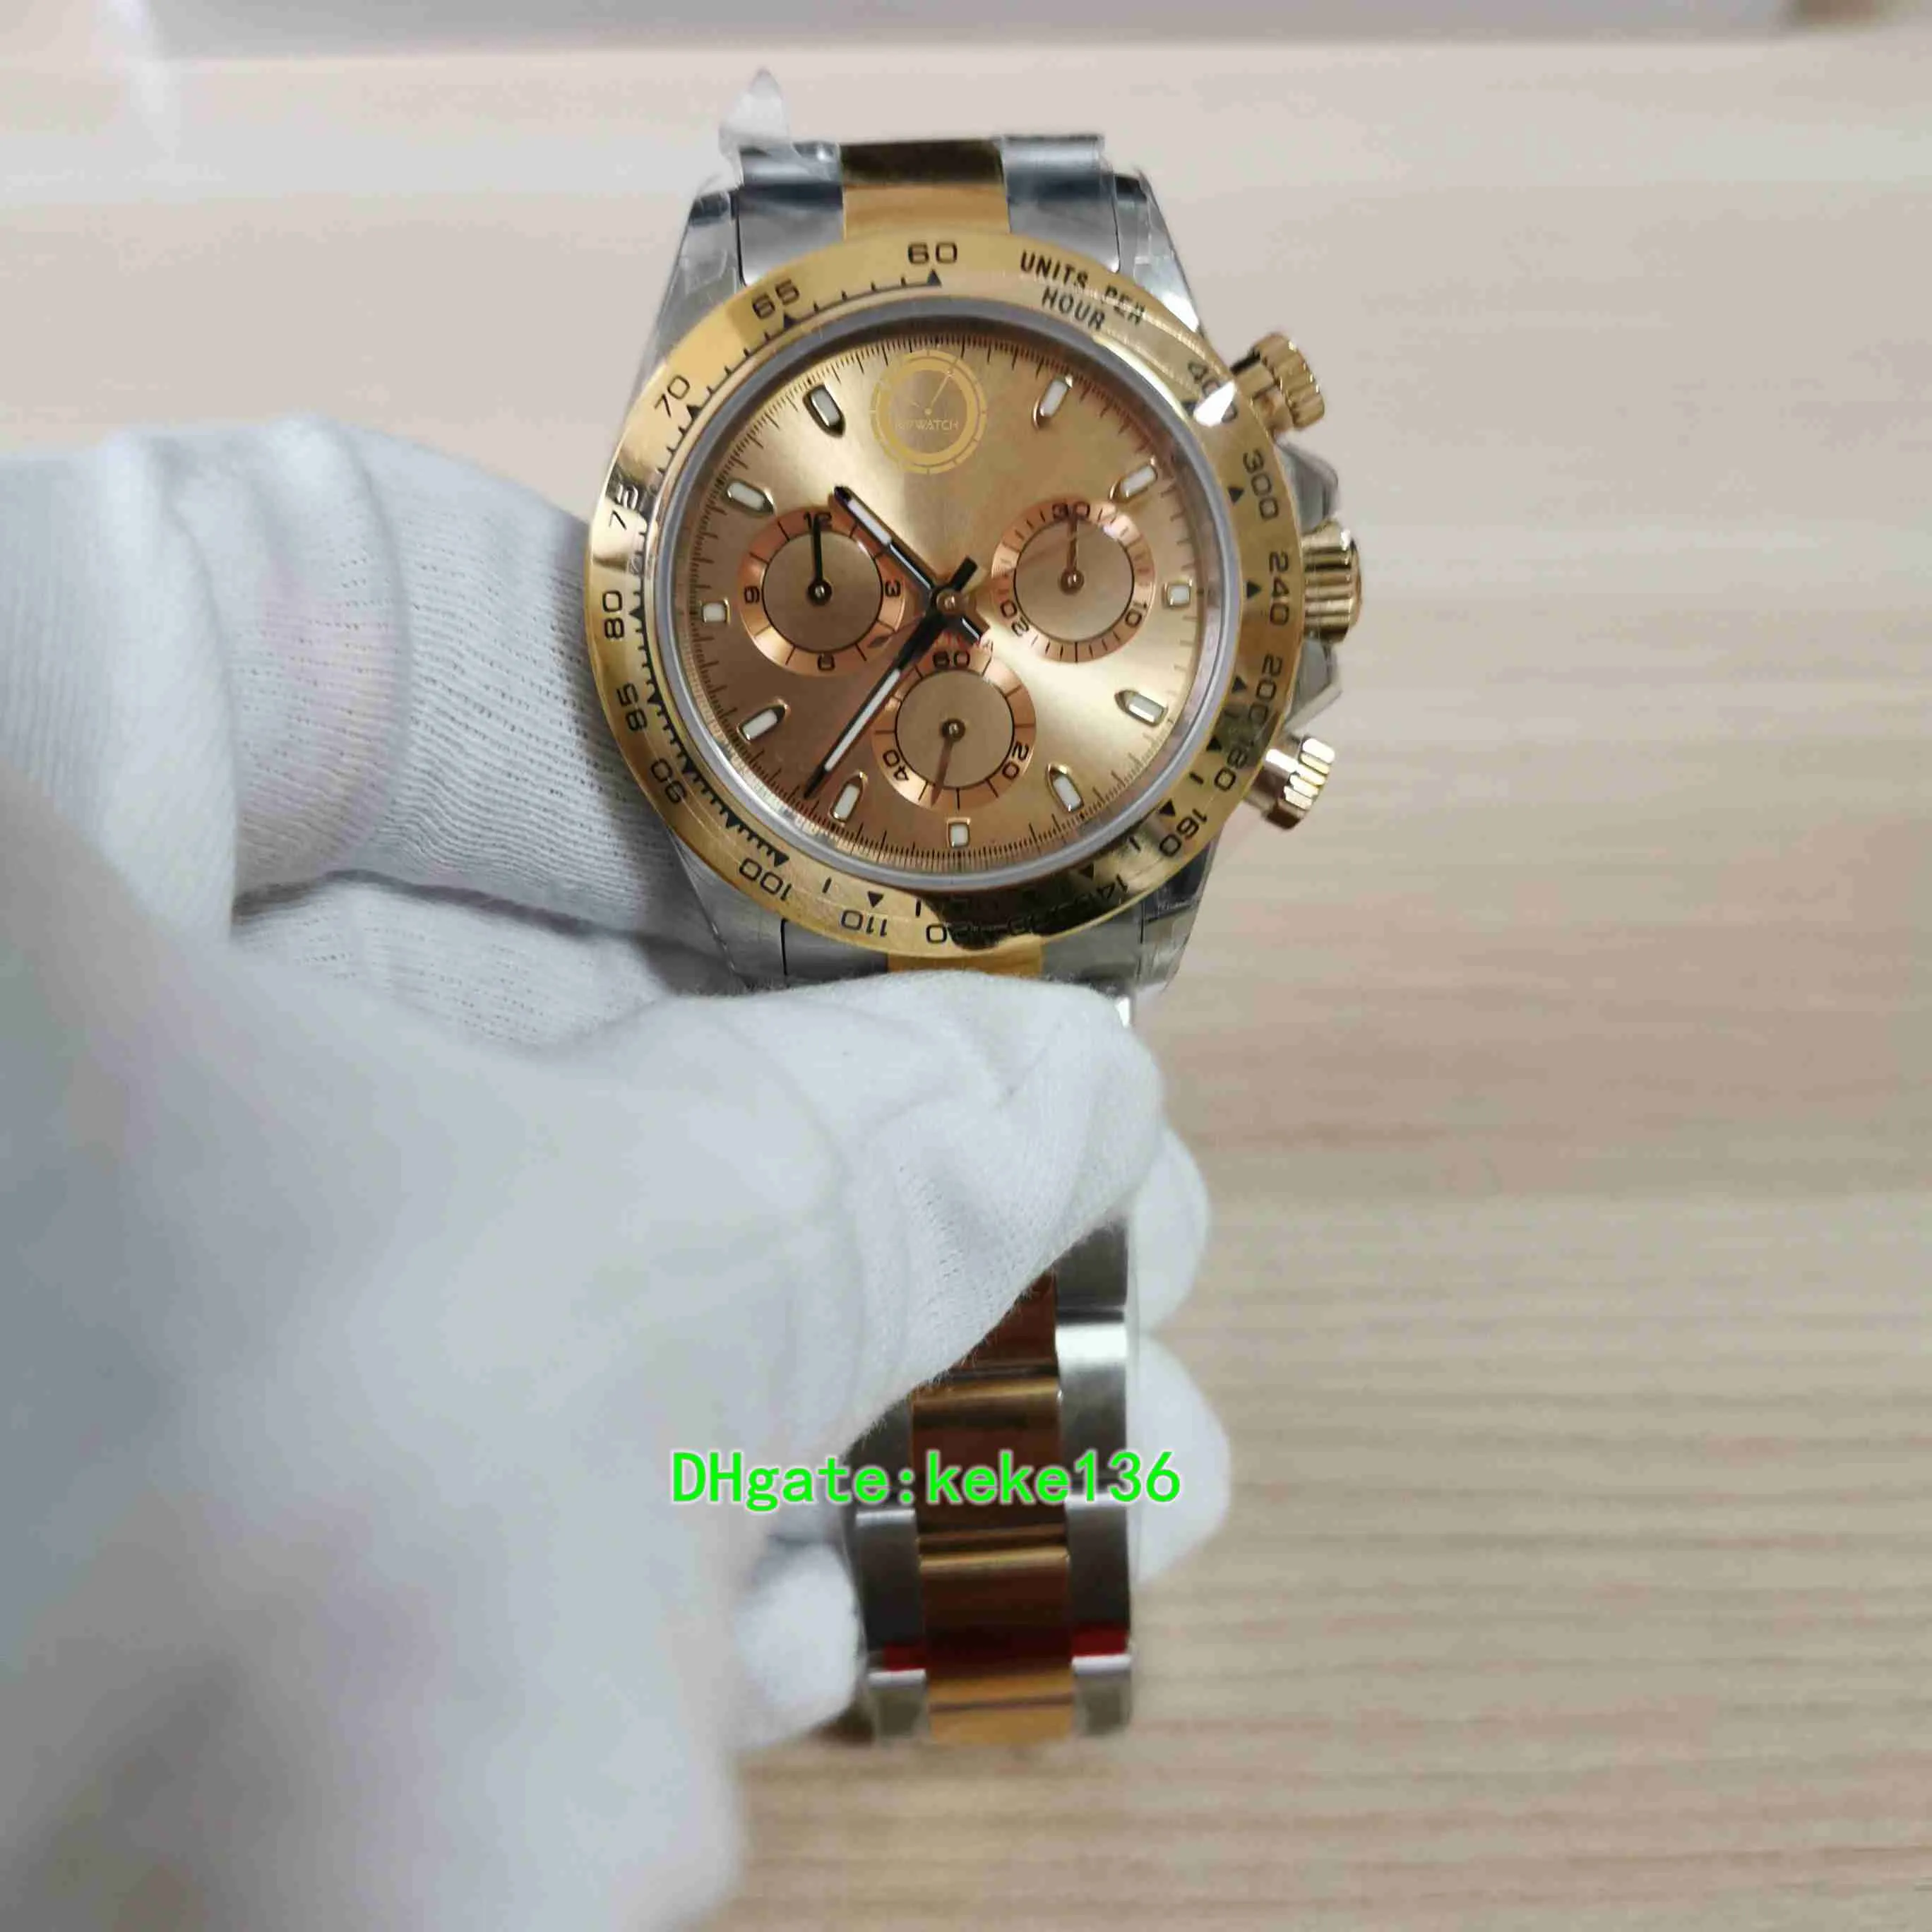 BPウォッチルミネセンス男性腕時計M116503-0003 116503 40mmイエローゴールド2トーンLuminescent Eta 7750クロノグラフ作業自動メカニカルメンズウォッチ